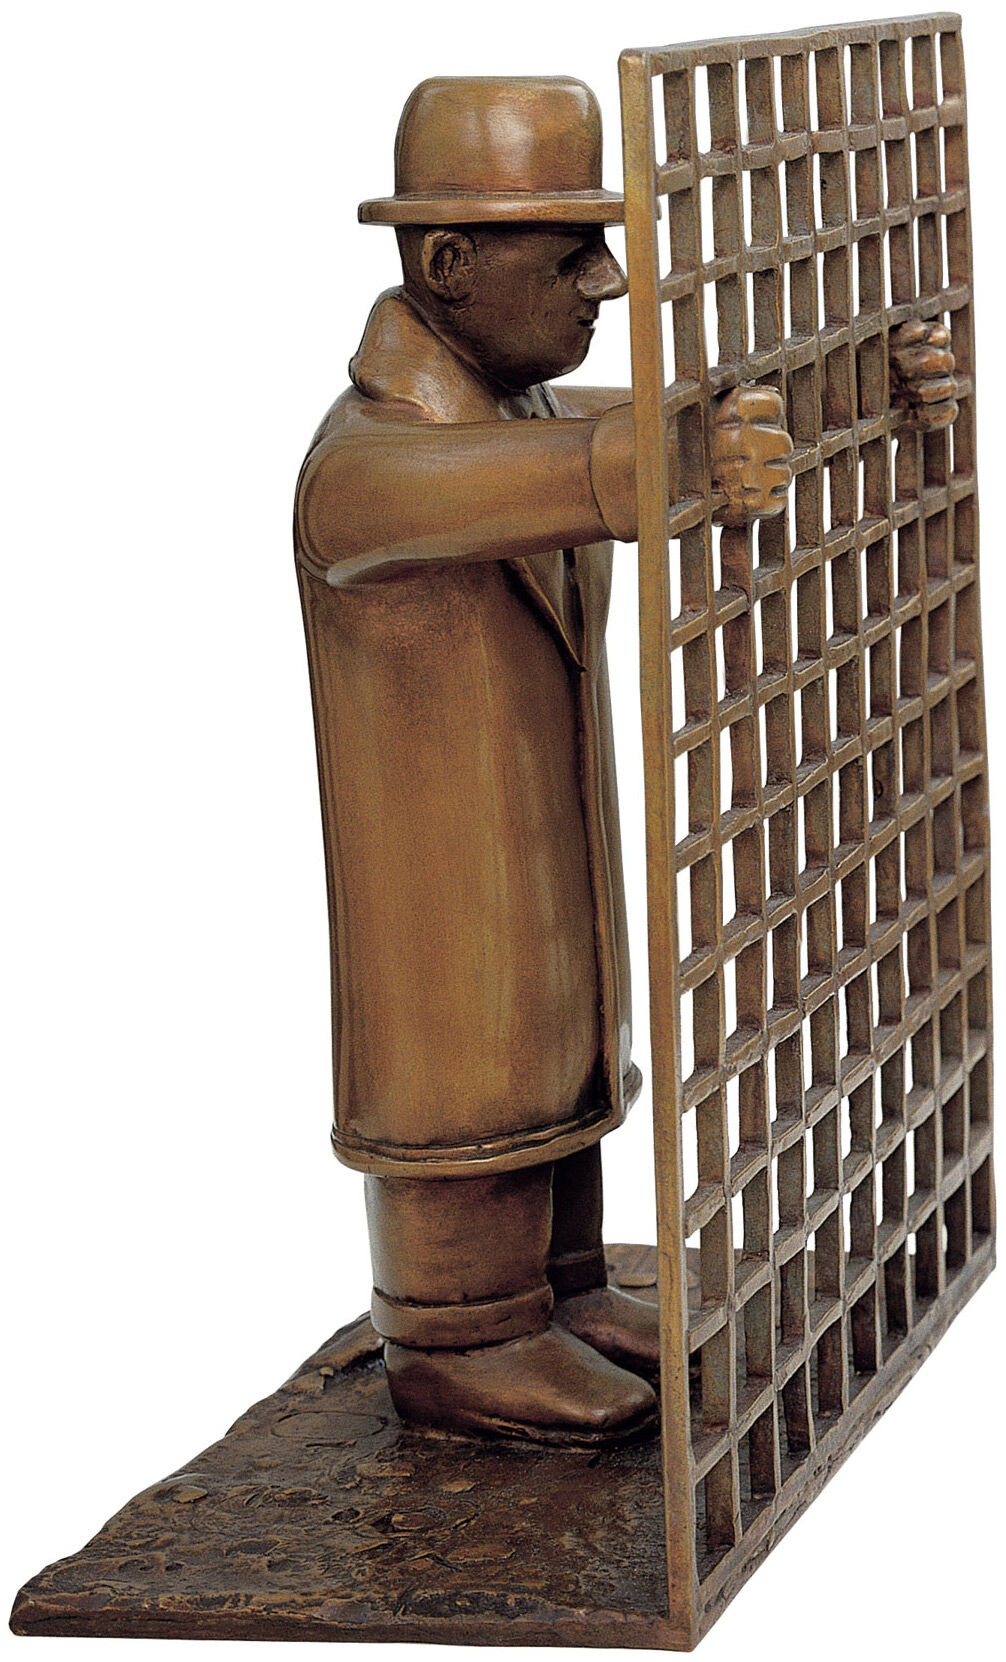 Sculpture "Man with Lattice", bronze by Siegfried Neuenhausen